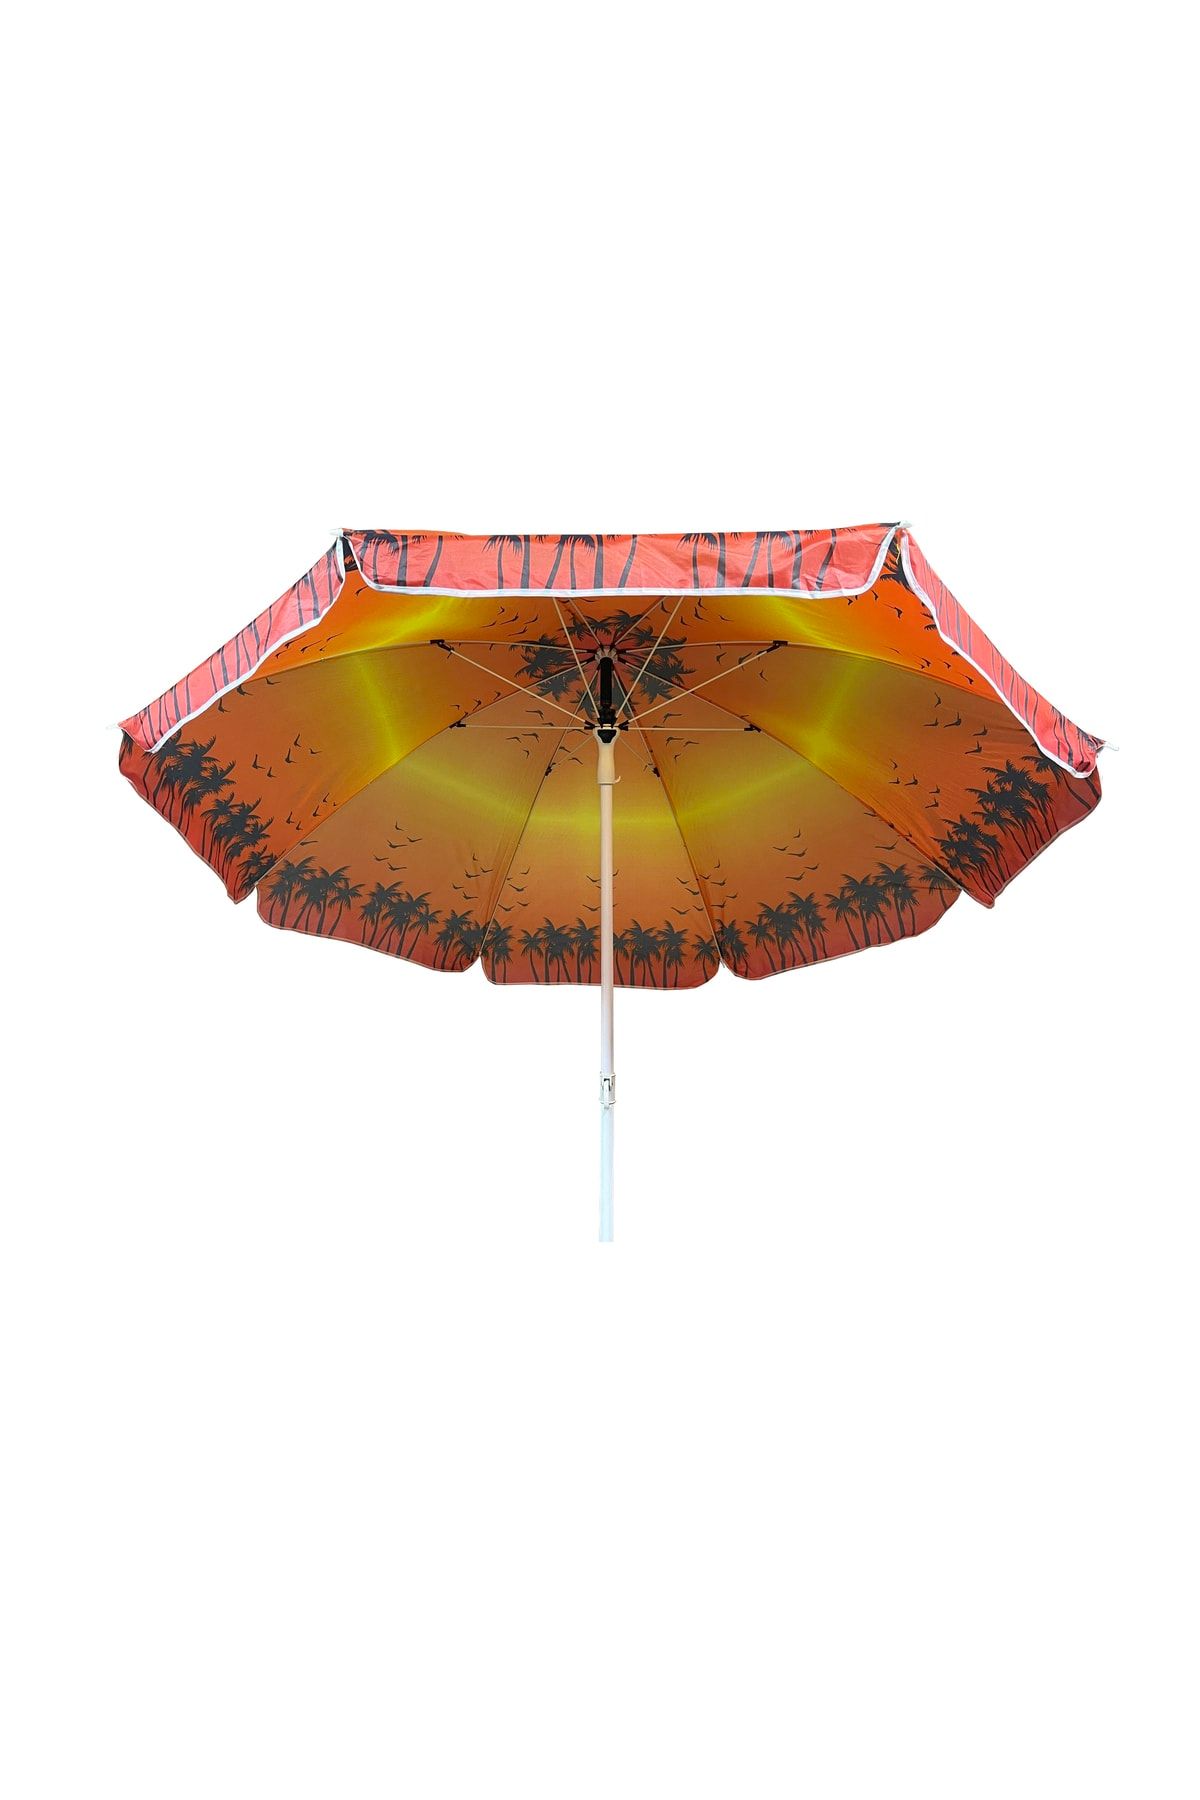 Sunlife Renkli 8 Telli Eğilebilir Plaj Balkon Deniz Bahçe Şemsiyesi 180 Cm Polyester Kumaş